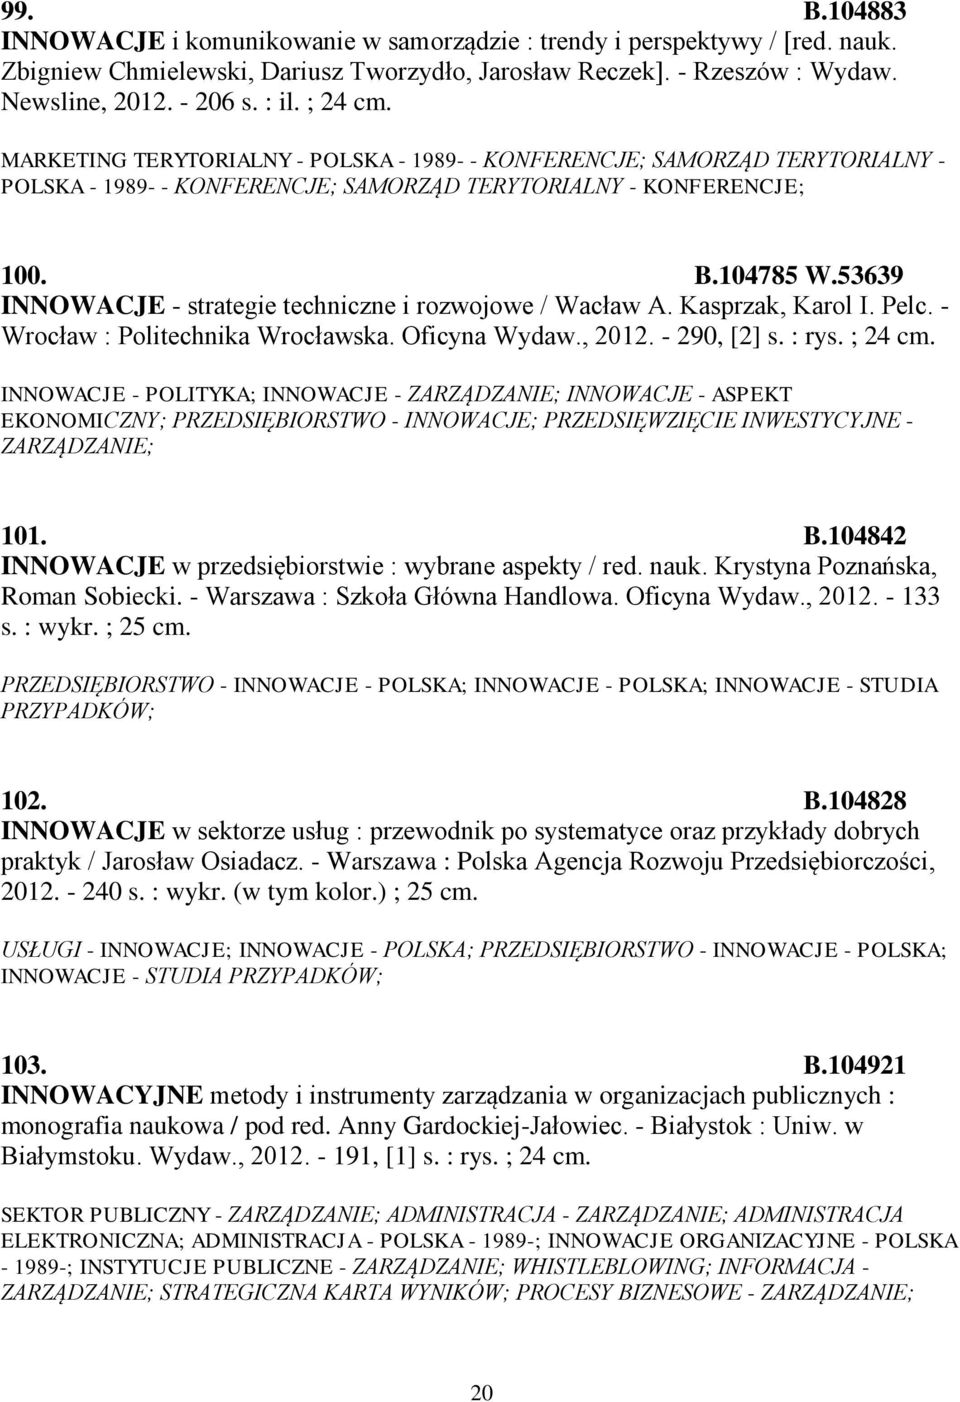 53639 INNOWACJE - strategie techniczne i rozwojowe / Wacław A. Kasprzak, Karol I. Pelc. - Wrocław : Politechnika Wrocławska. Oficyna Wydaw., 2012. - 290, [2] s. : rys. ; 24 cm.